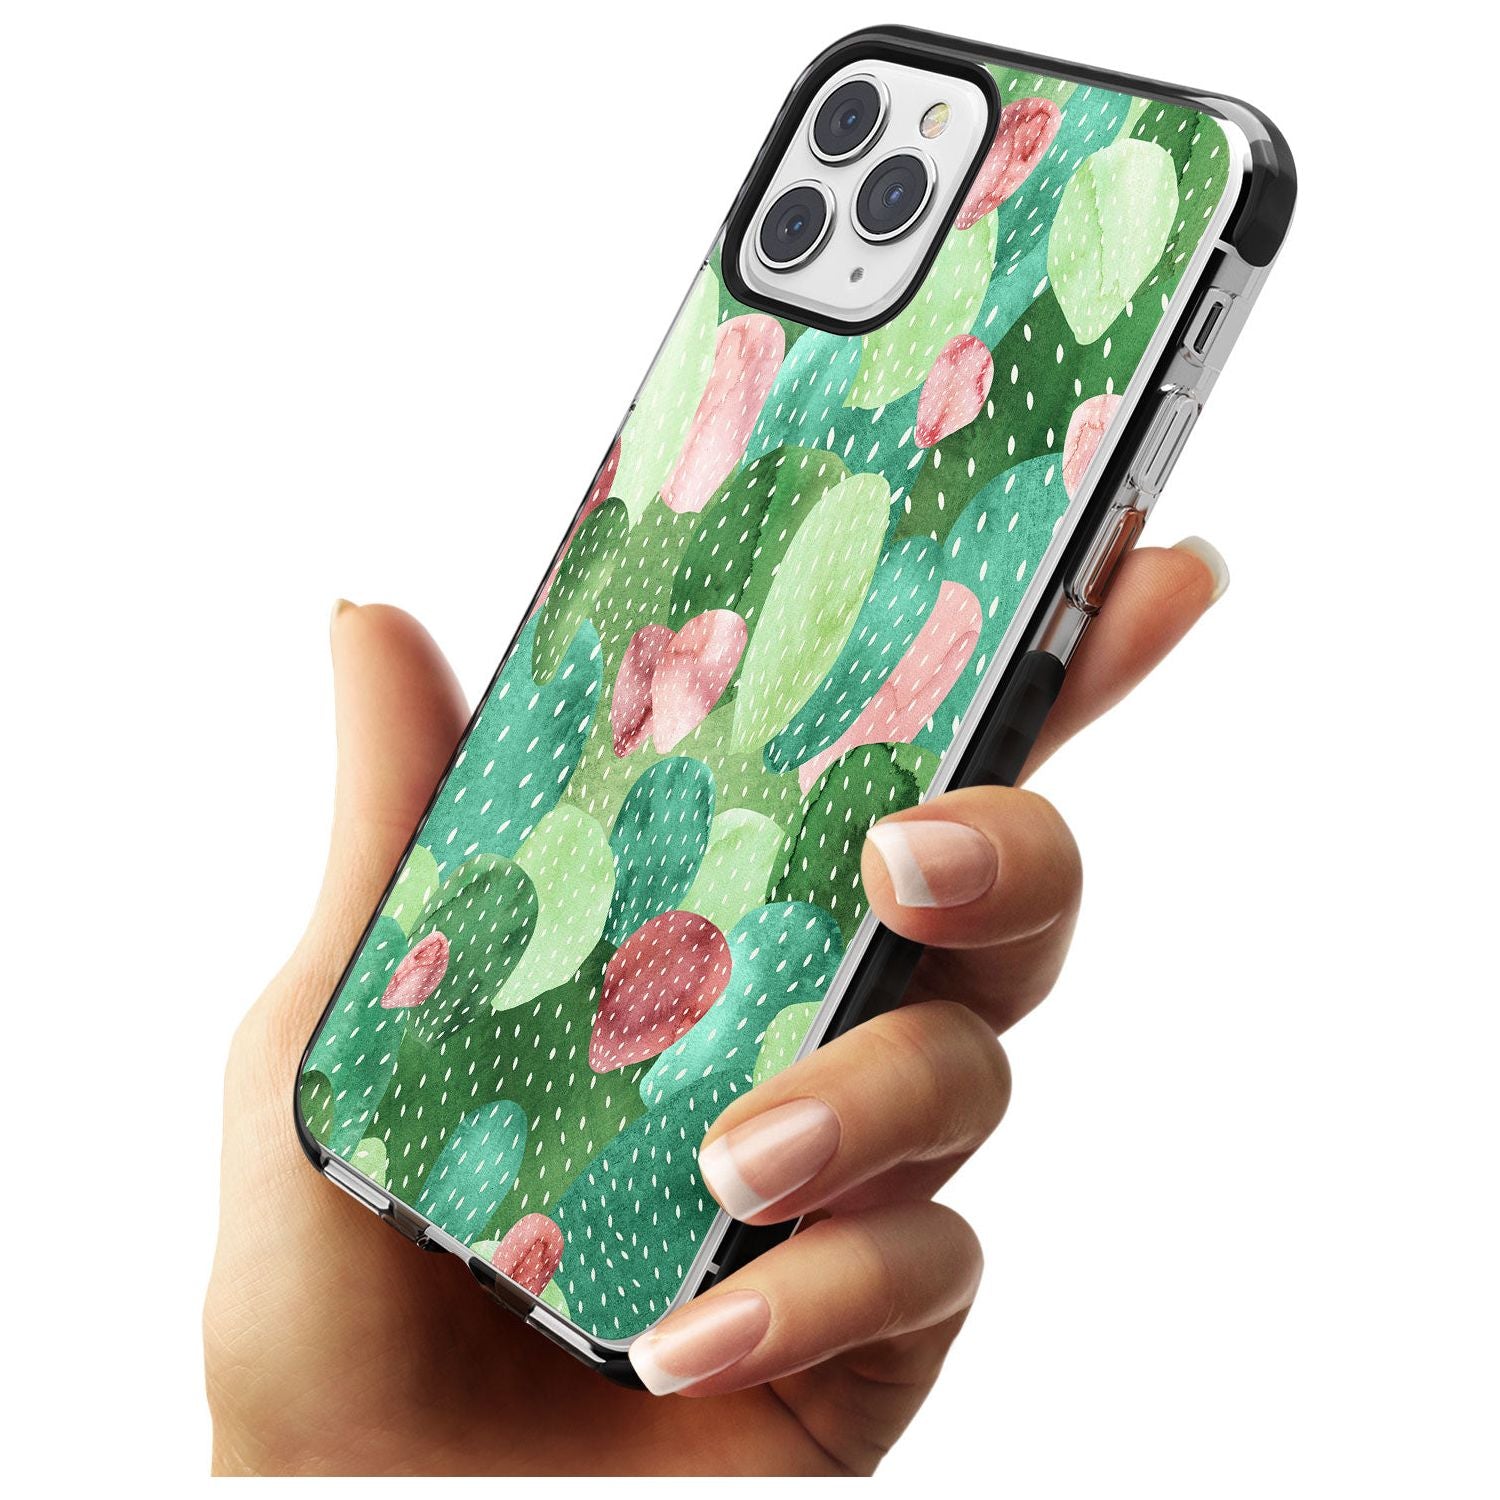 Colourful Cactus Mix Design Black Impact Phone Case for iPhone 11 Pro Max